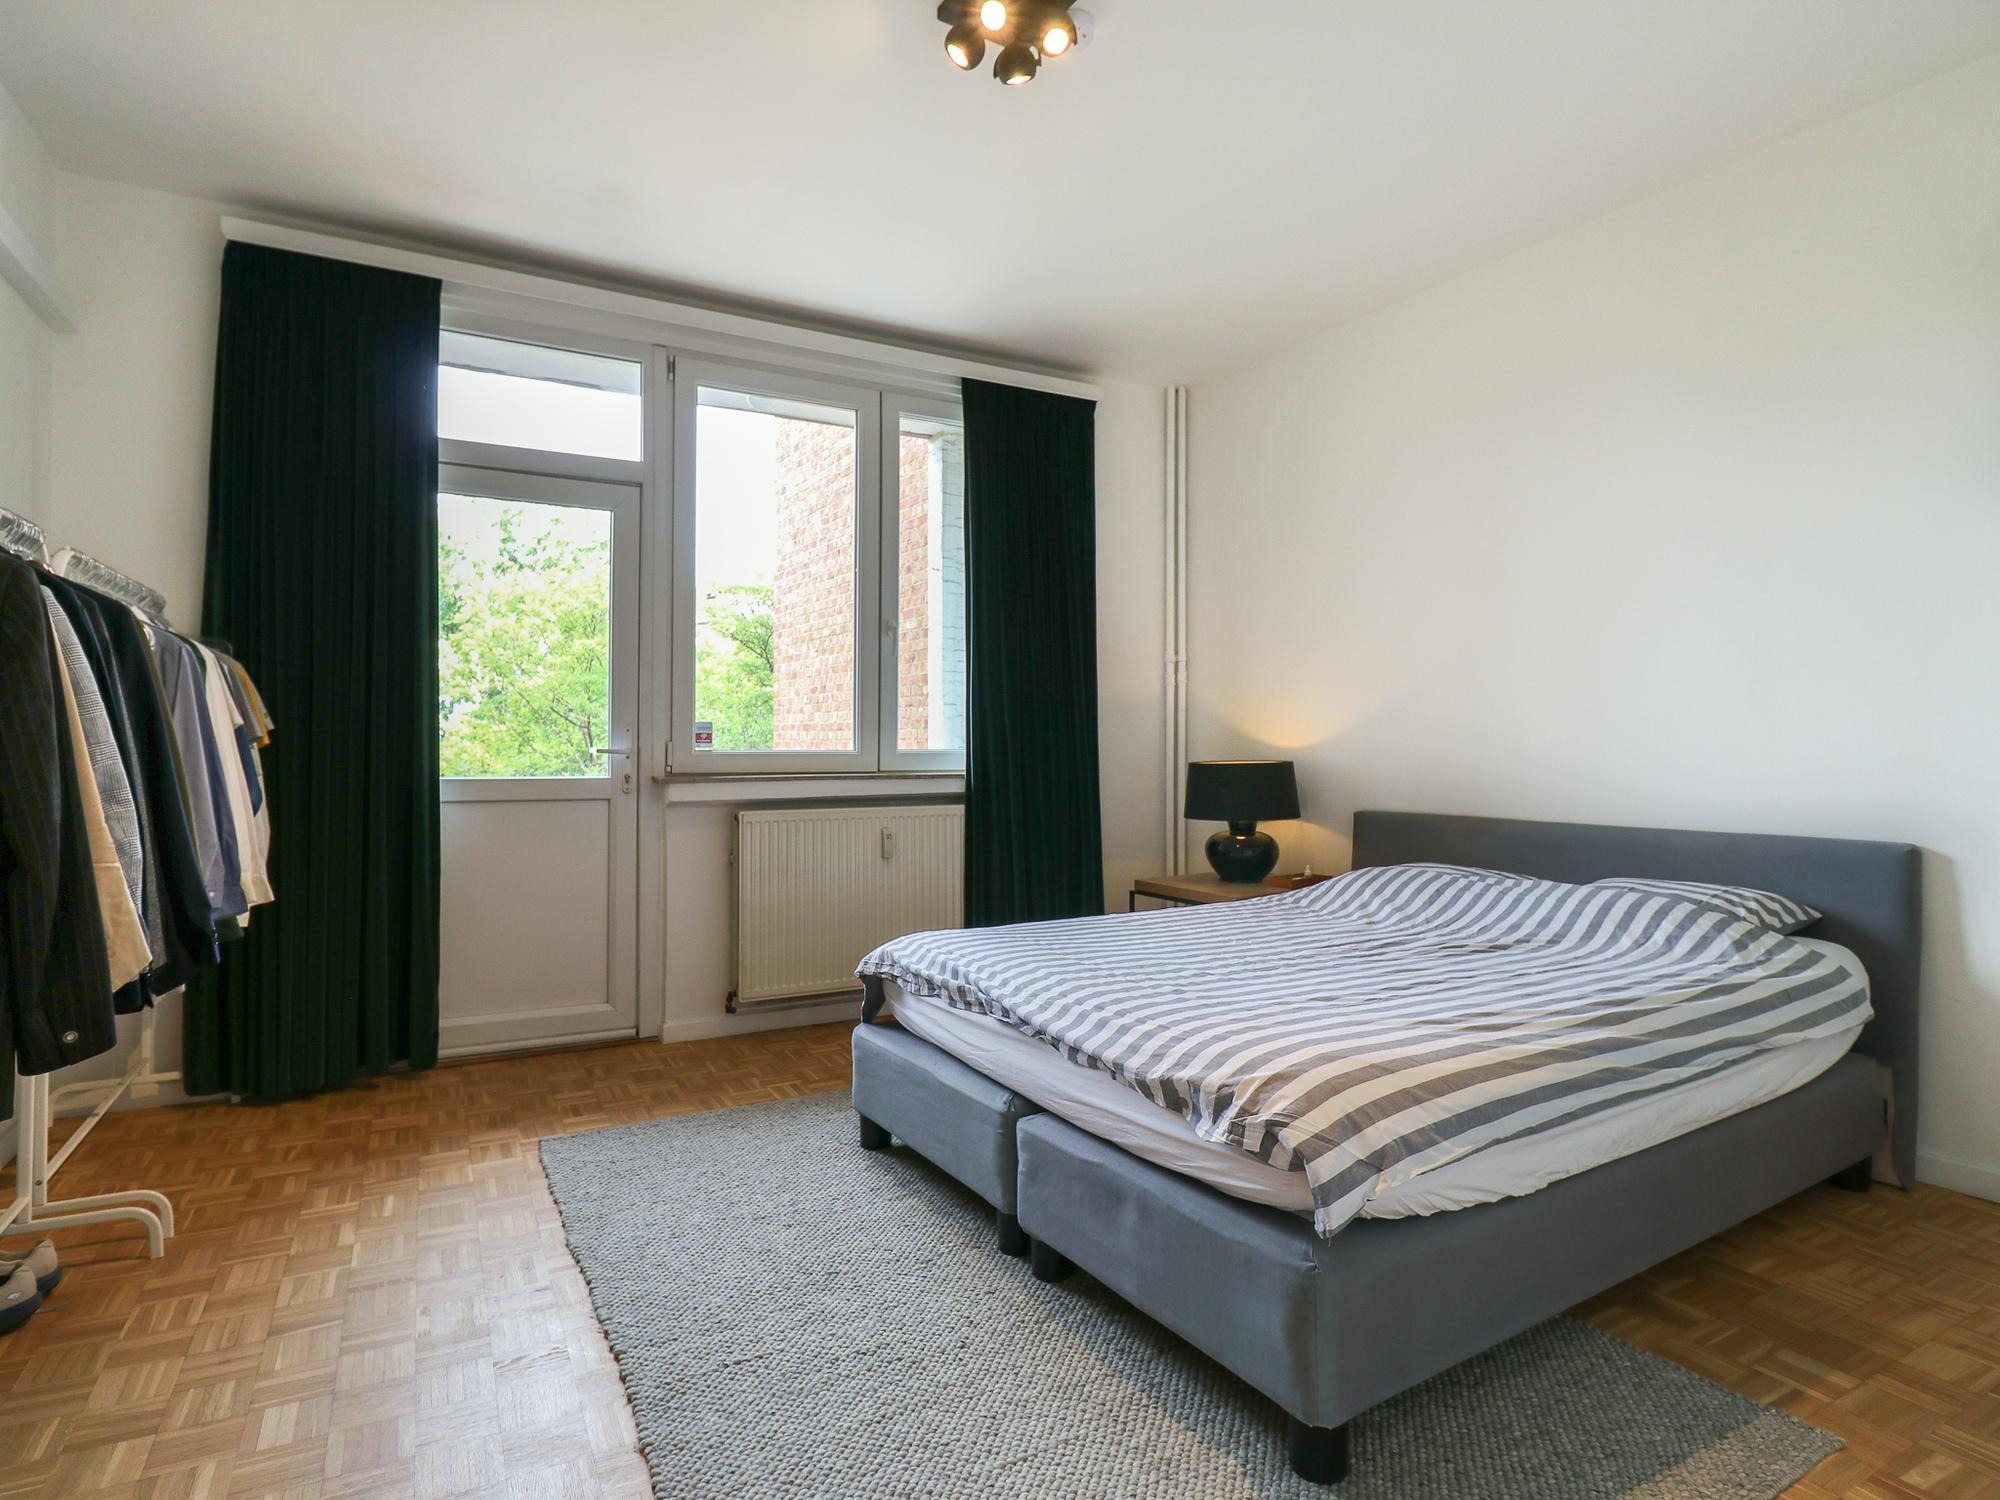 Woning / appartement - Antwerp - Mechelsesteenweg 209